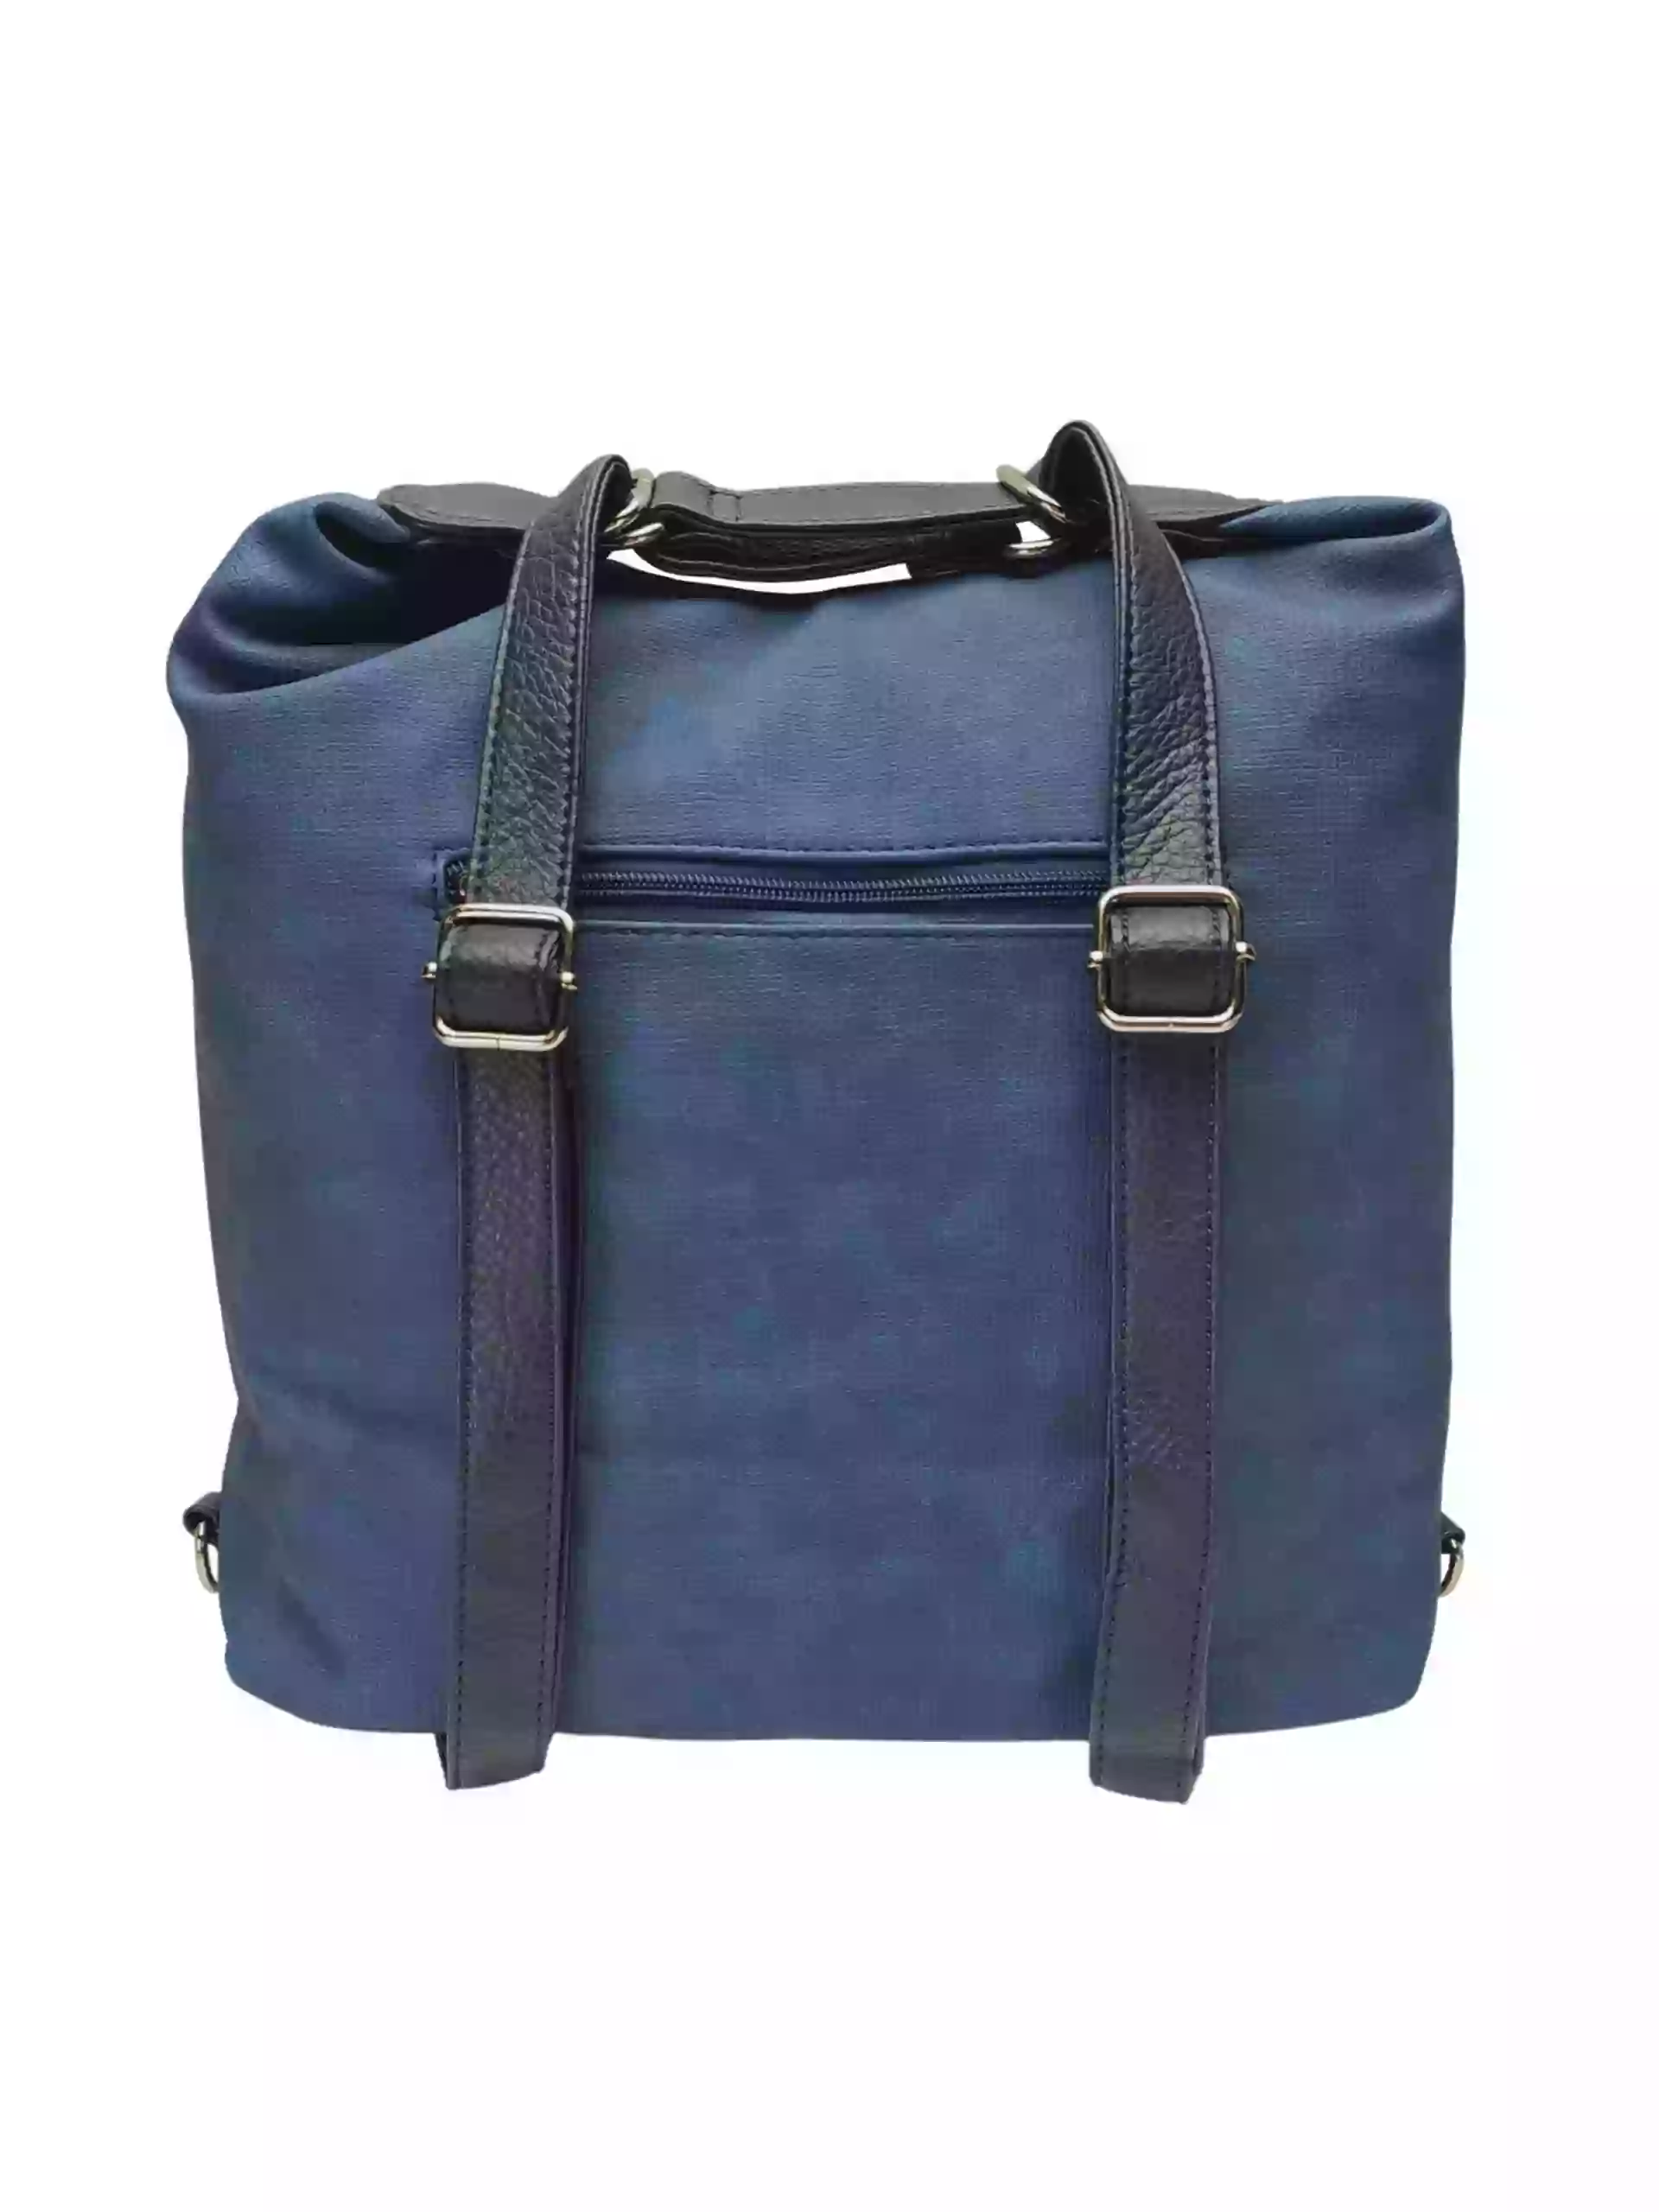 Velký středně modrý kabelko-batoh 2v1 s praktickou kapsou, Tapple, H190010N, zadní strana kabelko-batohu 2v1 s popruhy